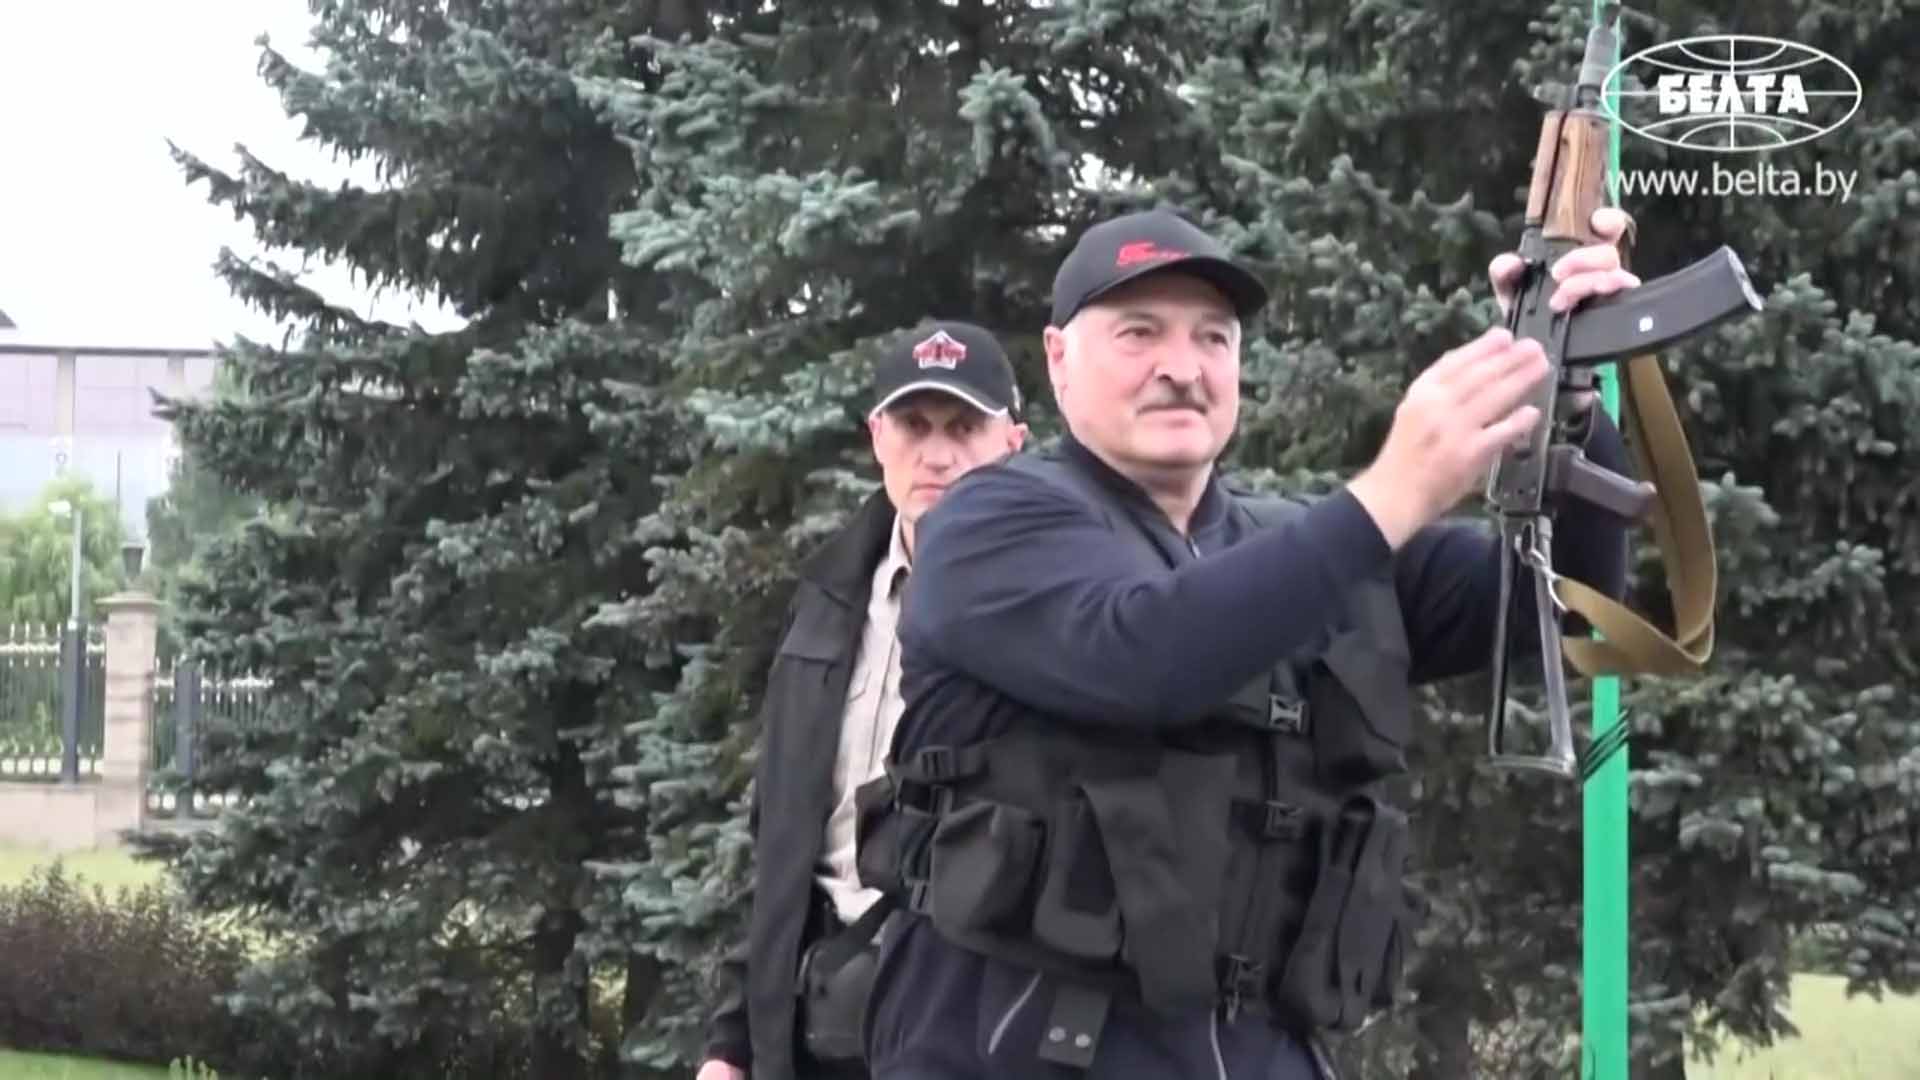 Lecsaptak a belarusz rendőrök a legnagyobb független híroldalra